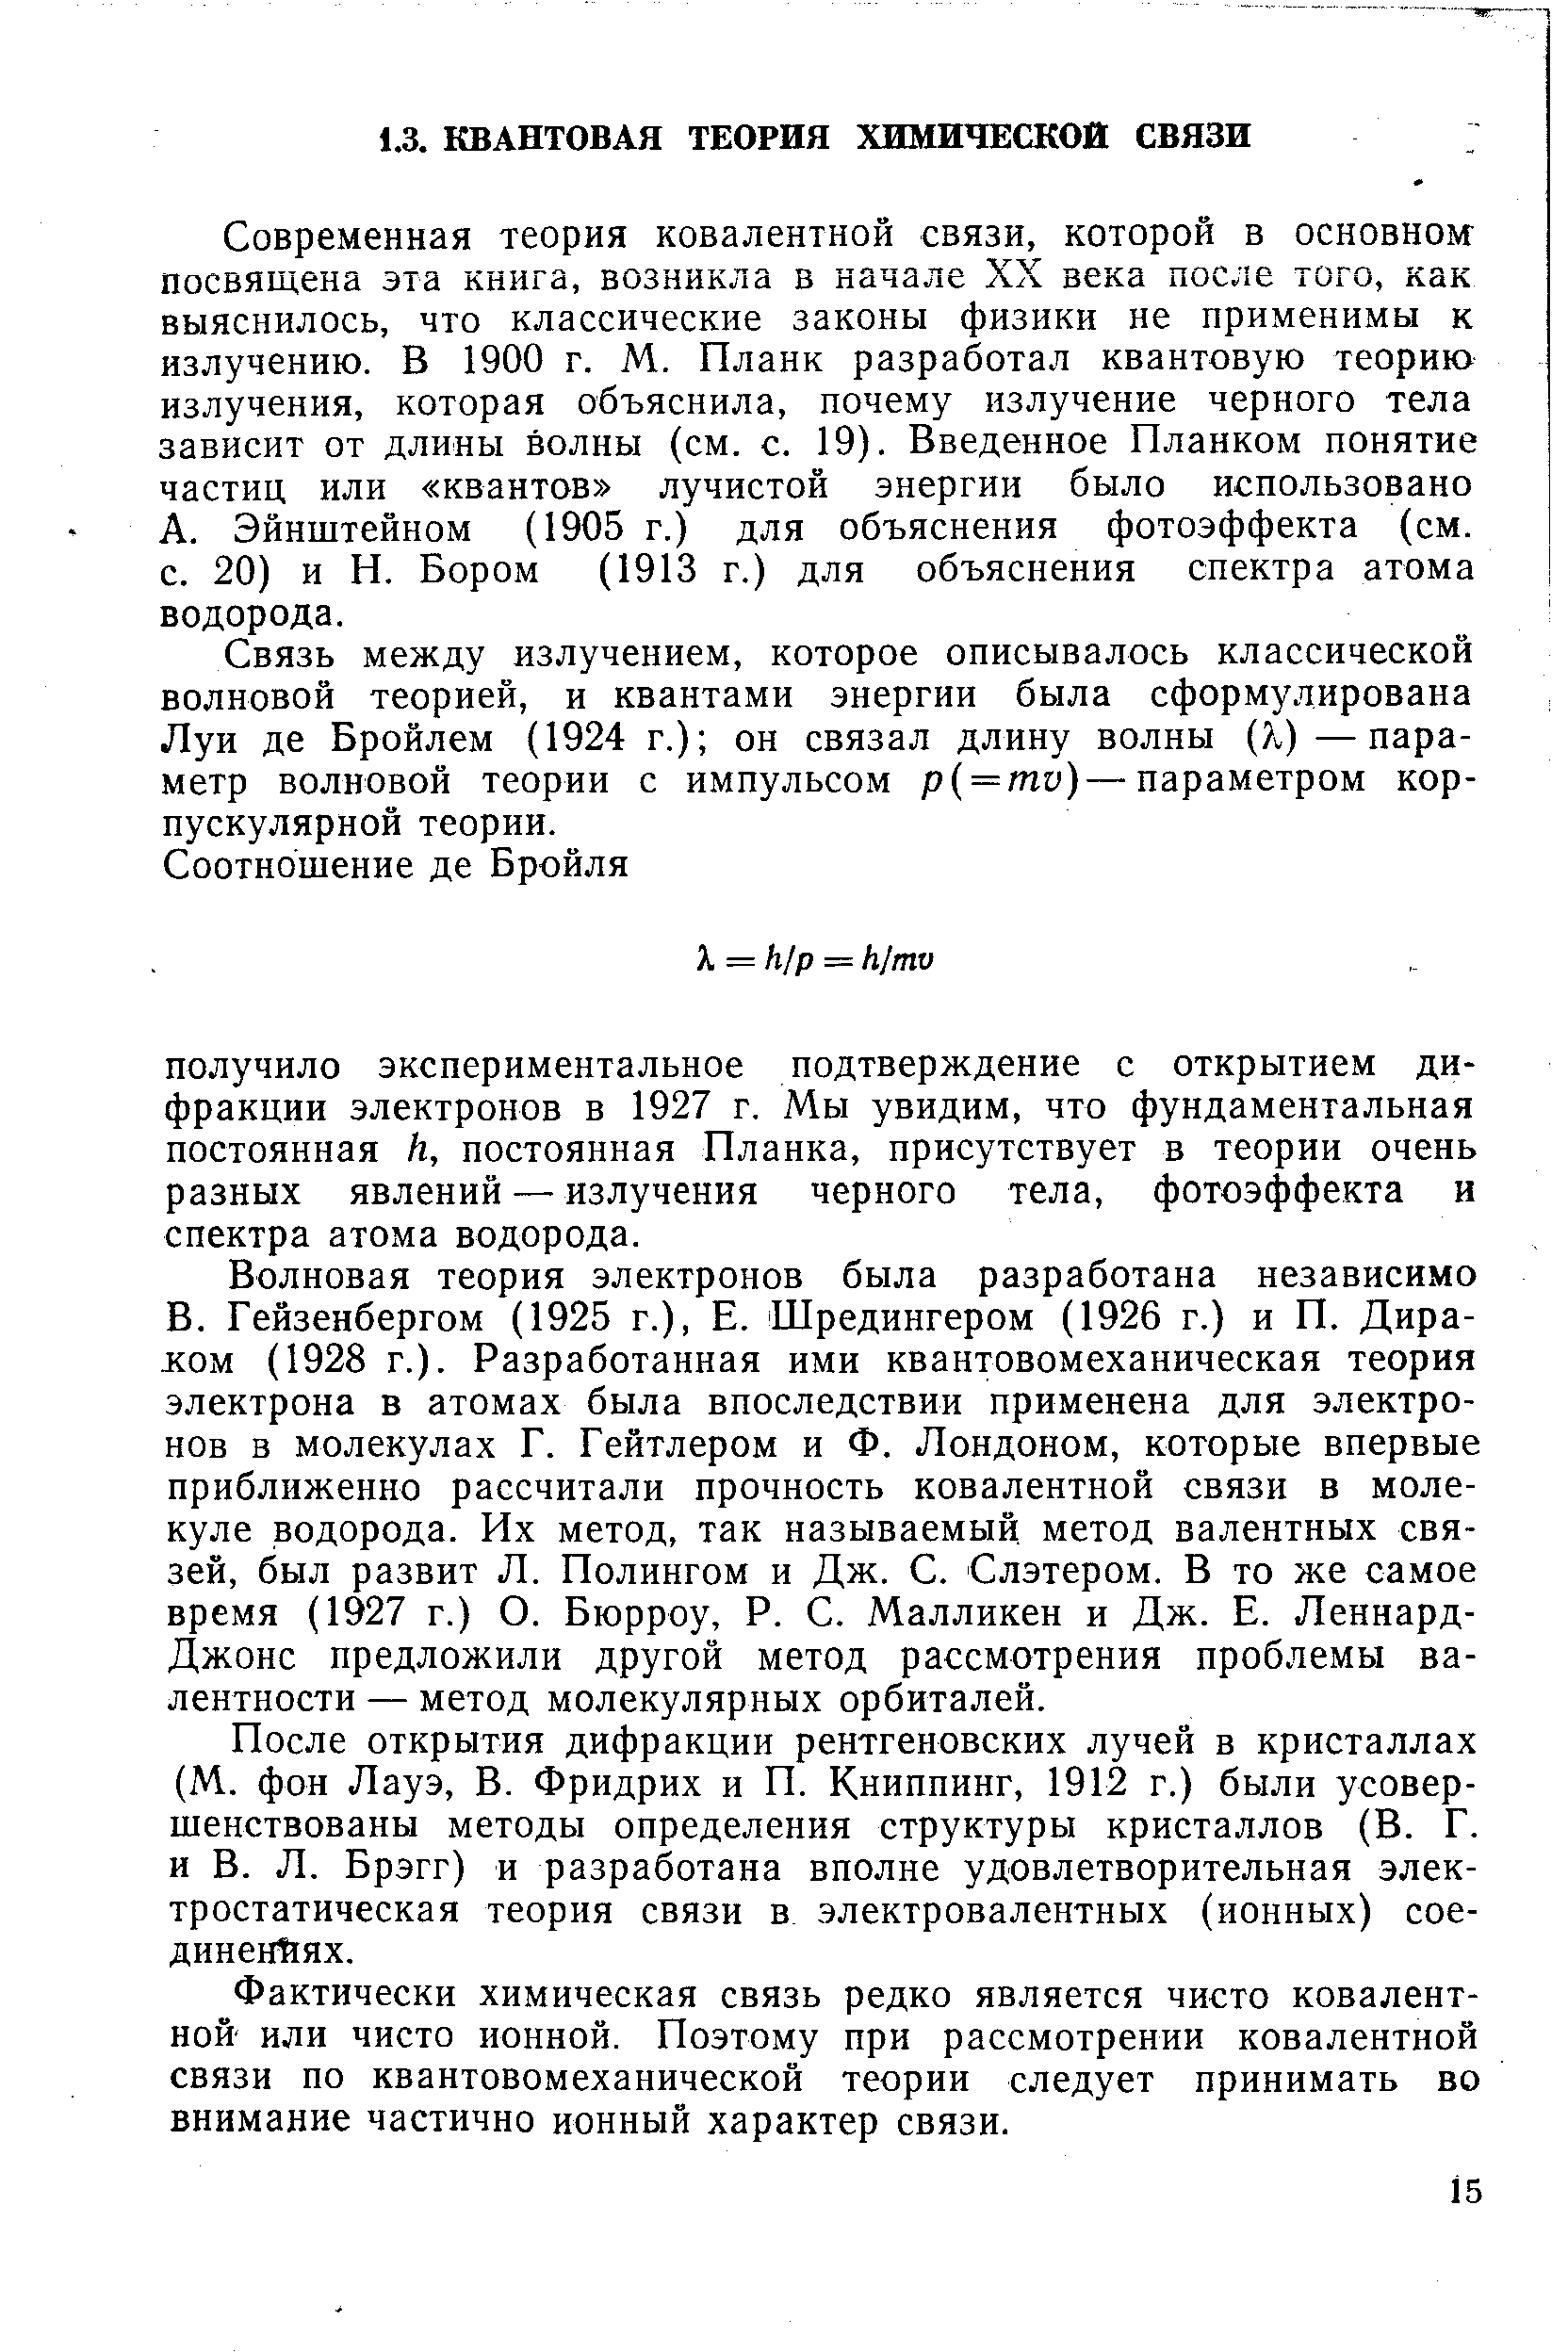 Эйнштейном (1905 г.) для объяснения фотоэффекта (см. с. 20) и Н. Бором (1913 г.) для объяснения спектра атома водорода.